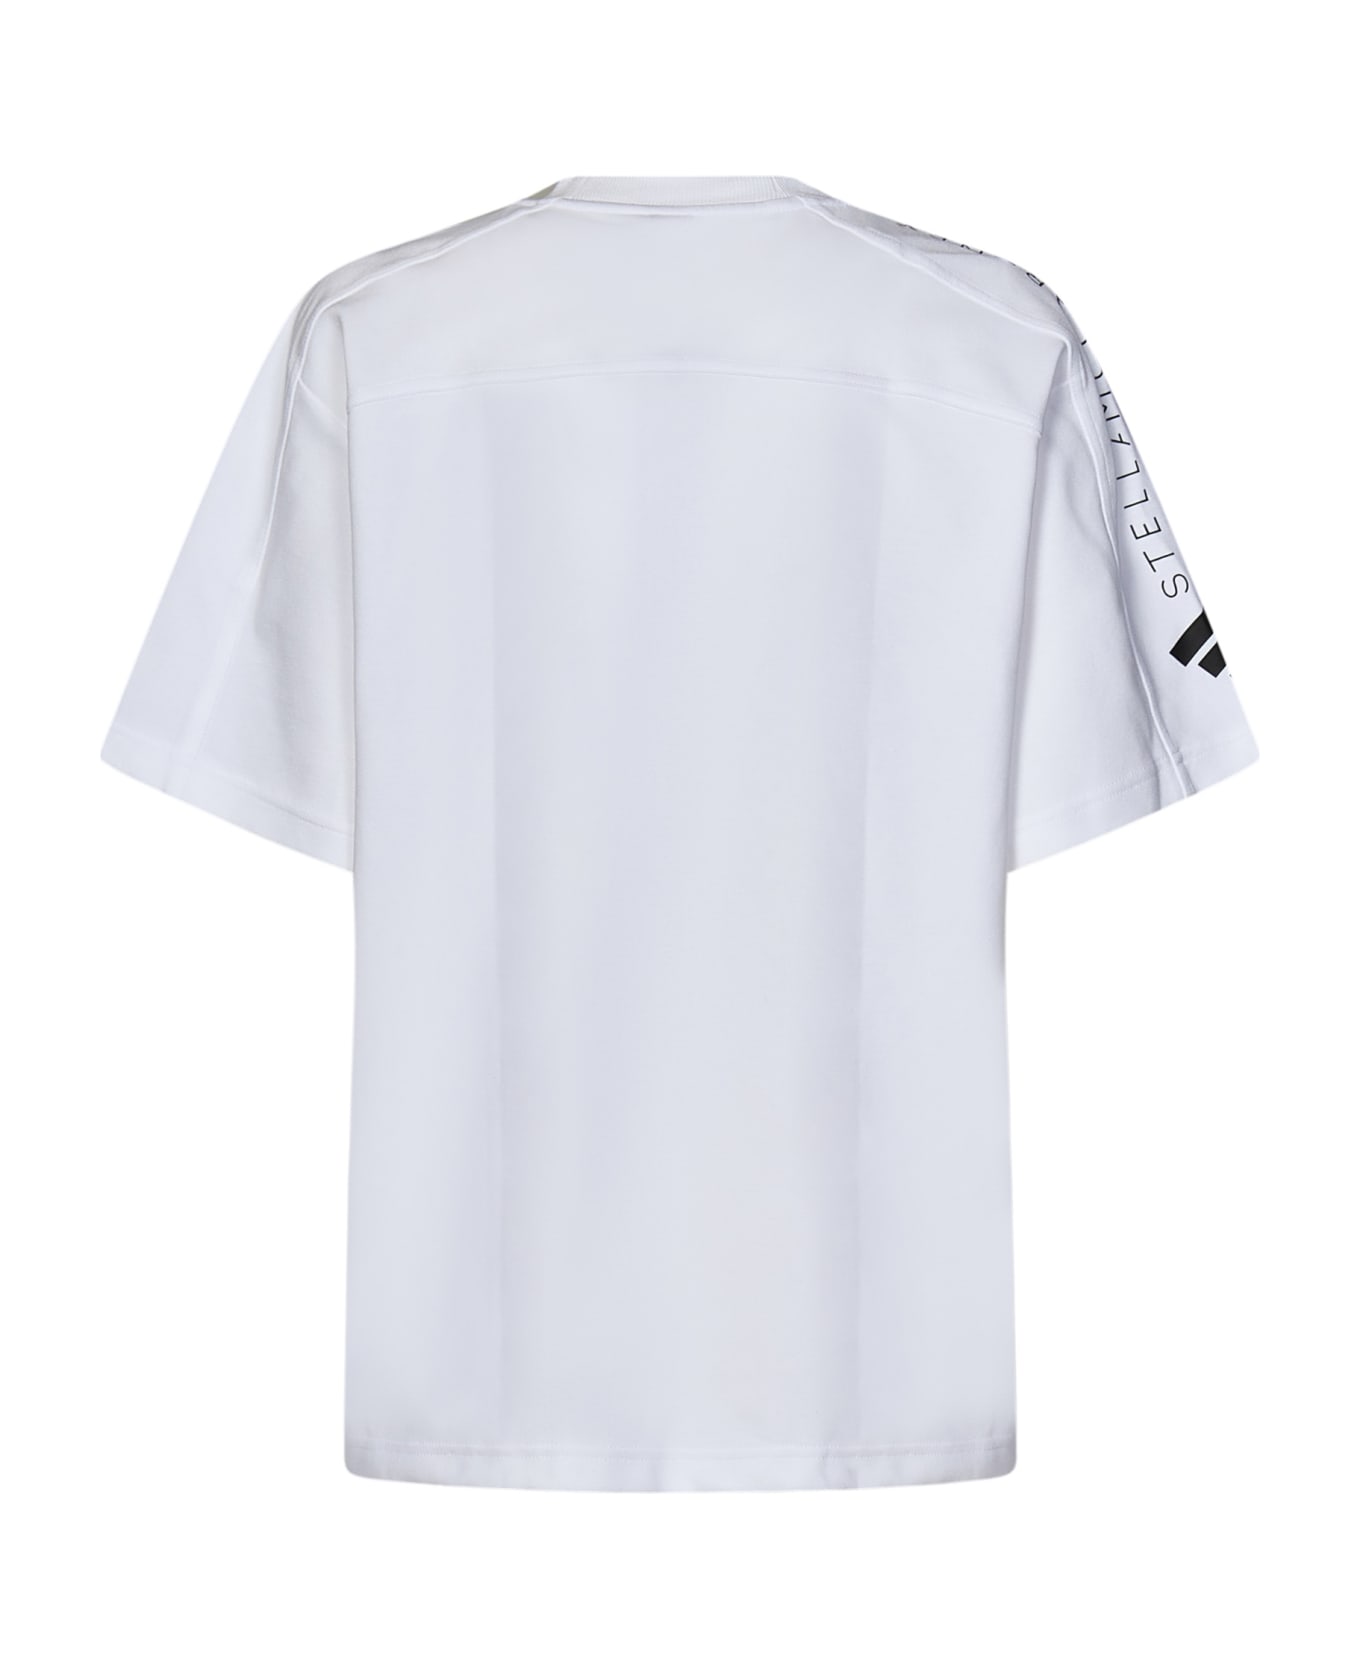 Adidas by Stella McCartney T-shirt - White